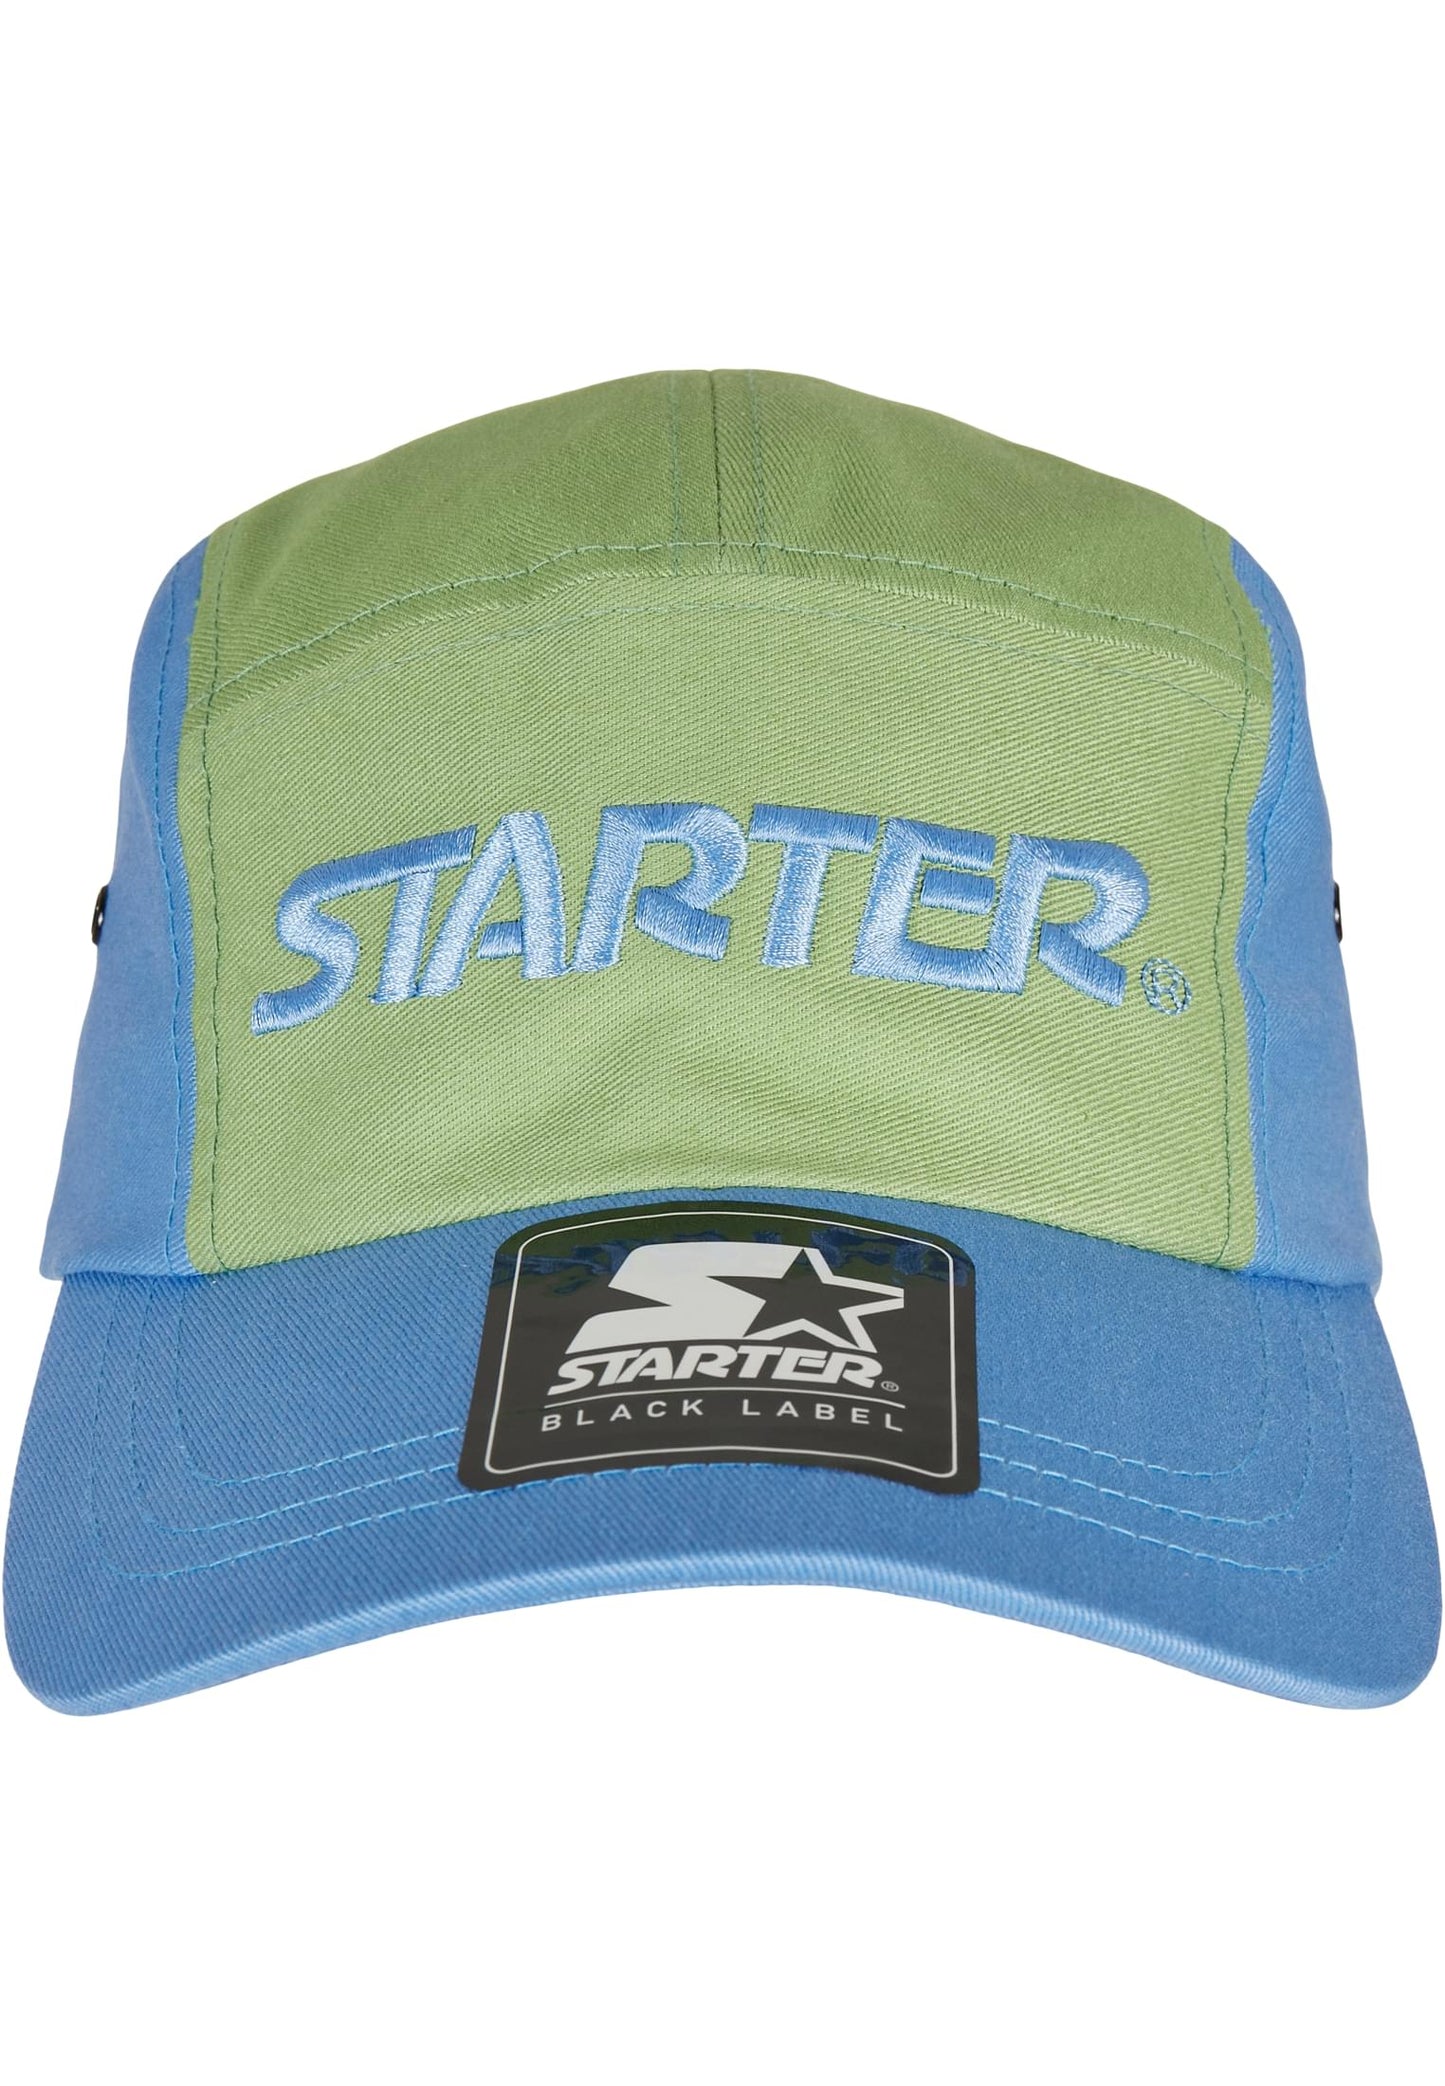 STARTERS JOCKEY CAP